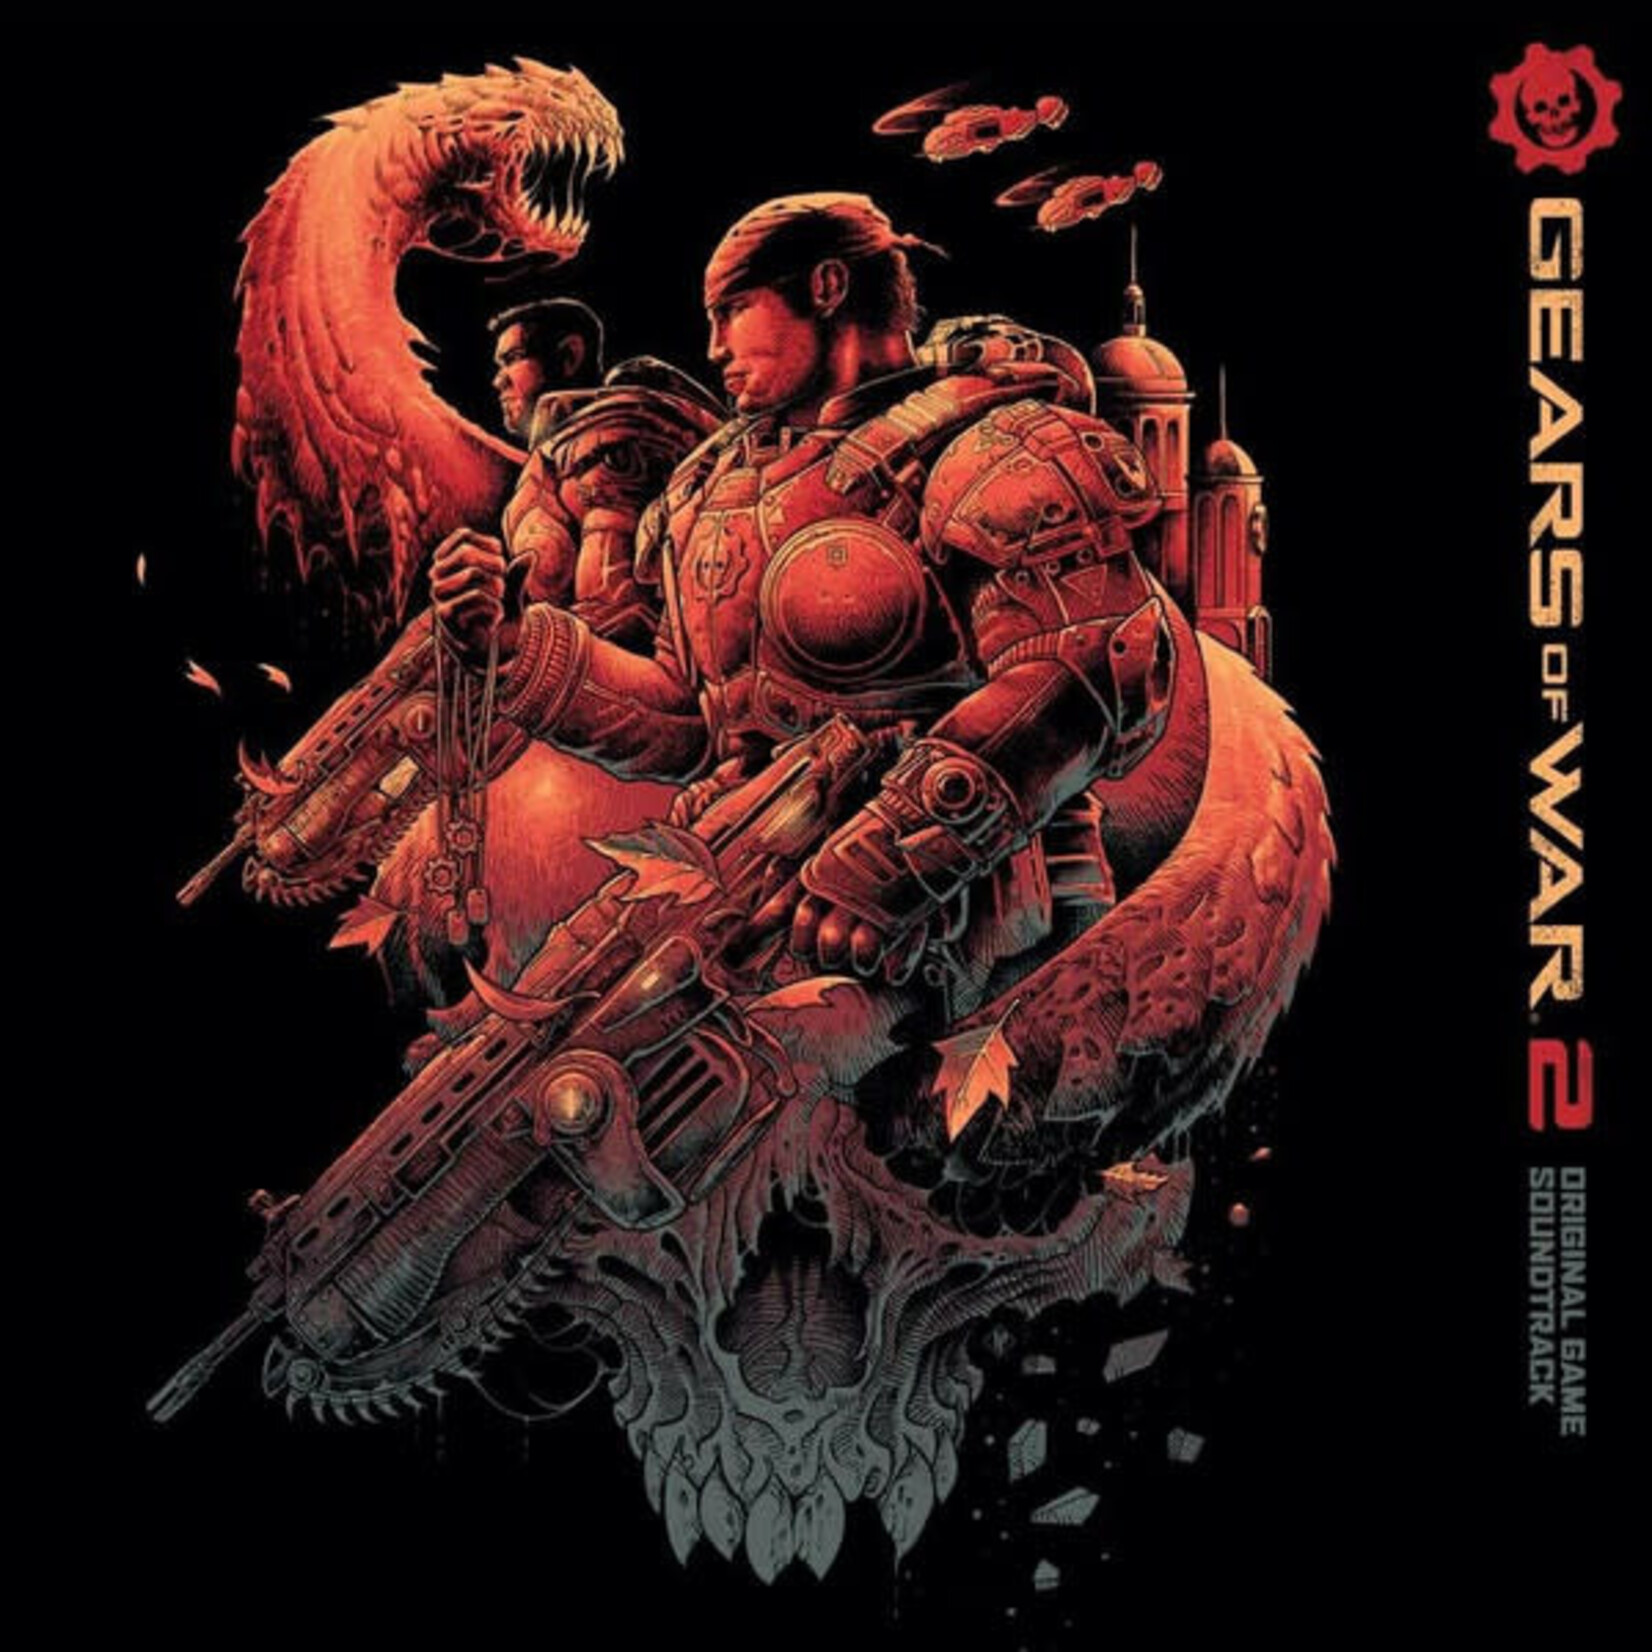 Steve Jablonsky – Gears Of War 2 The Original Game Soundtrack